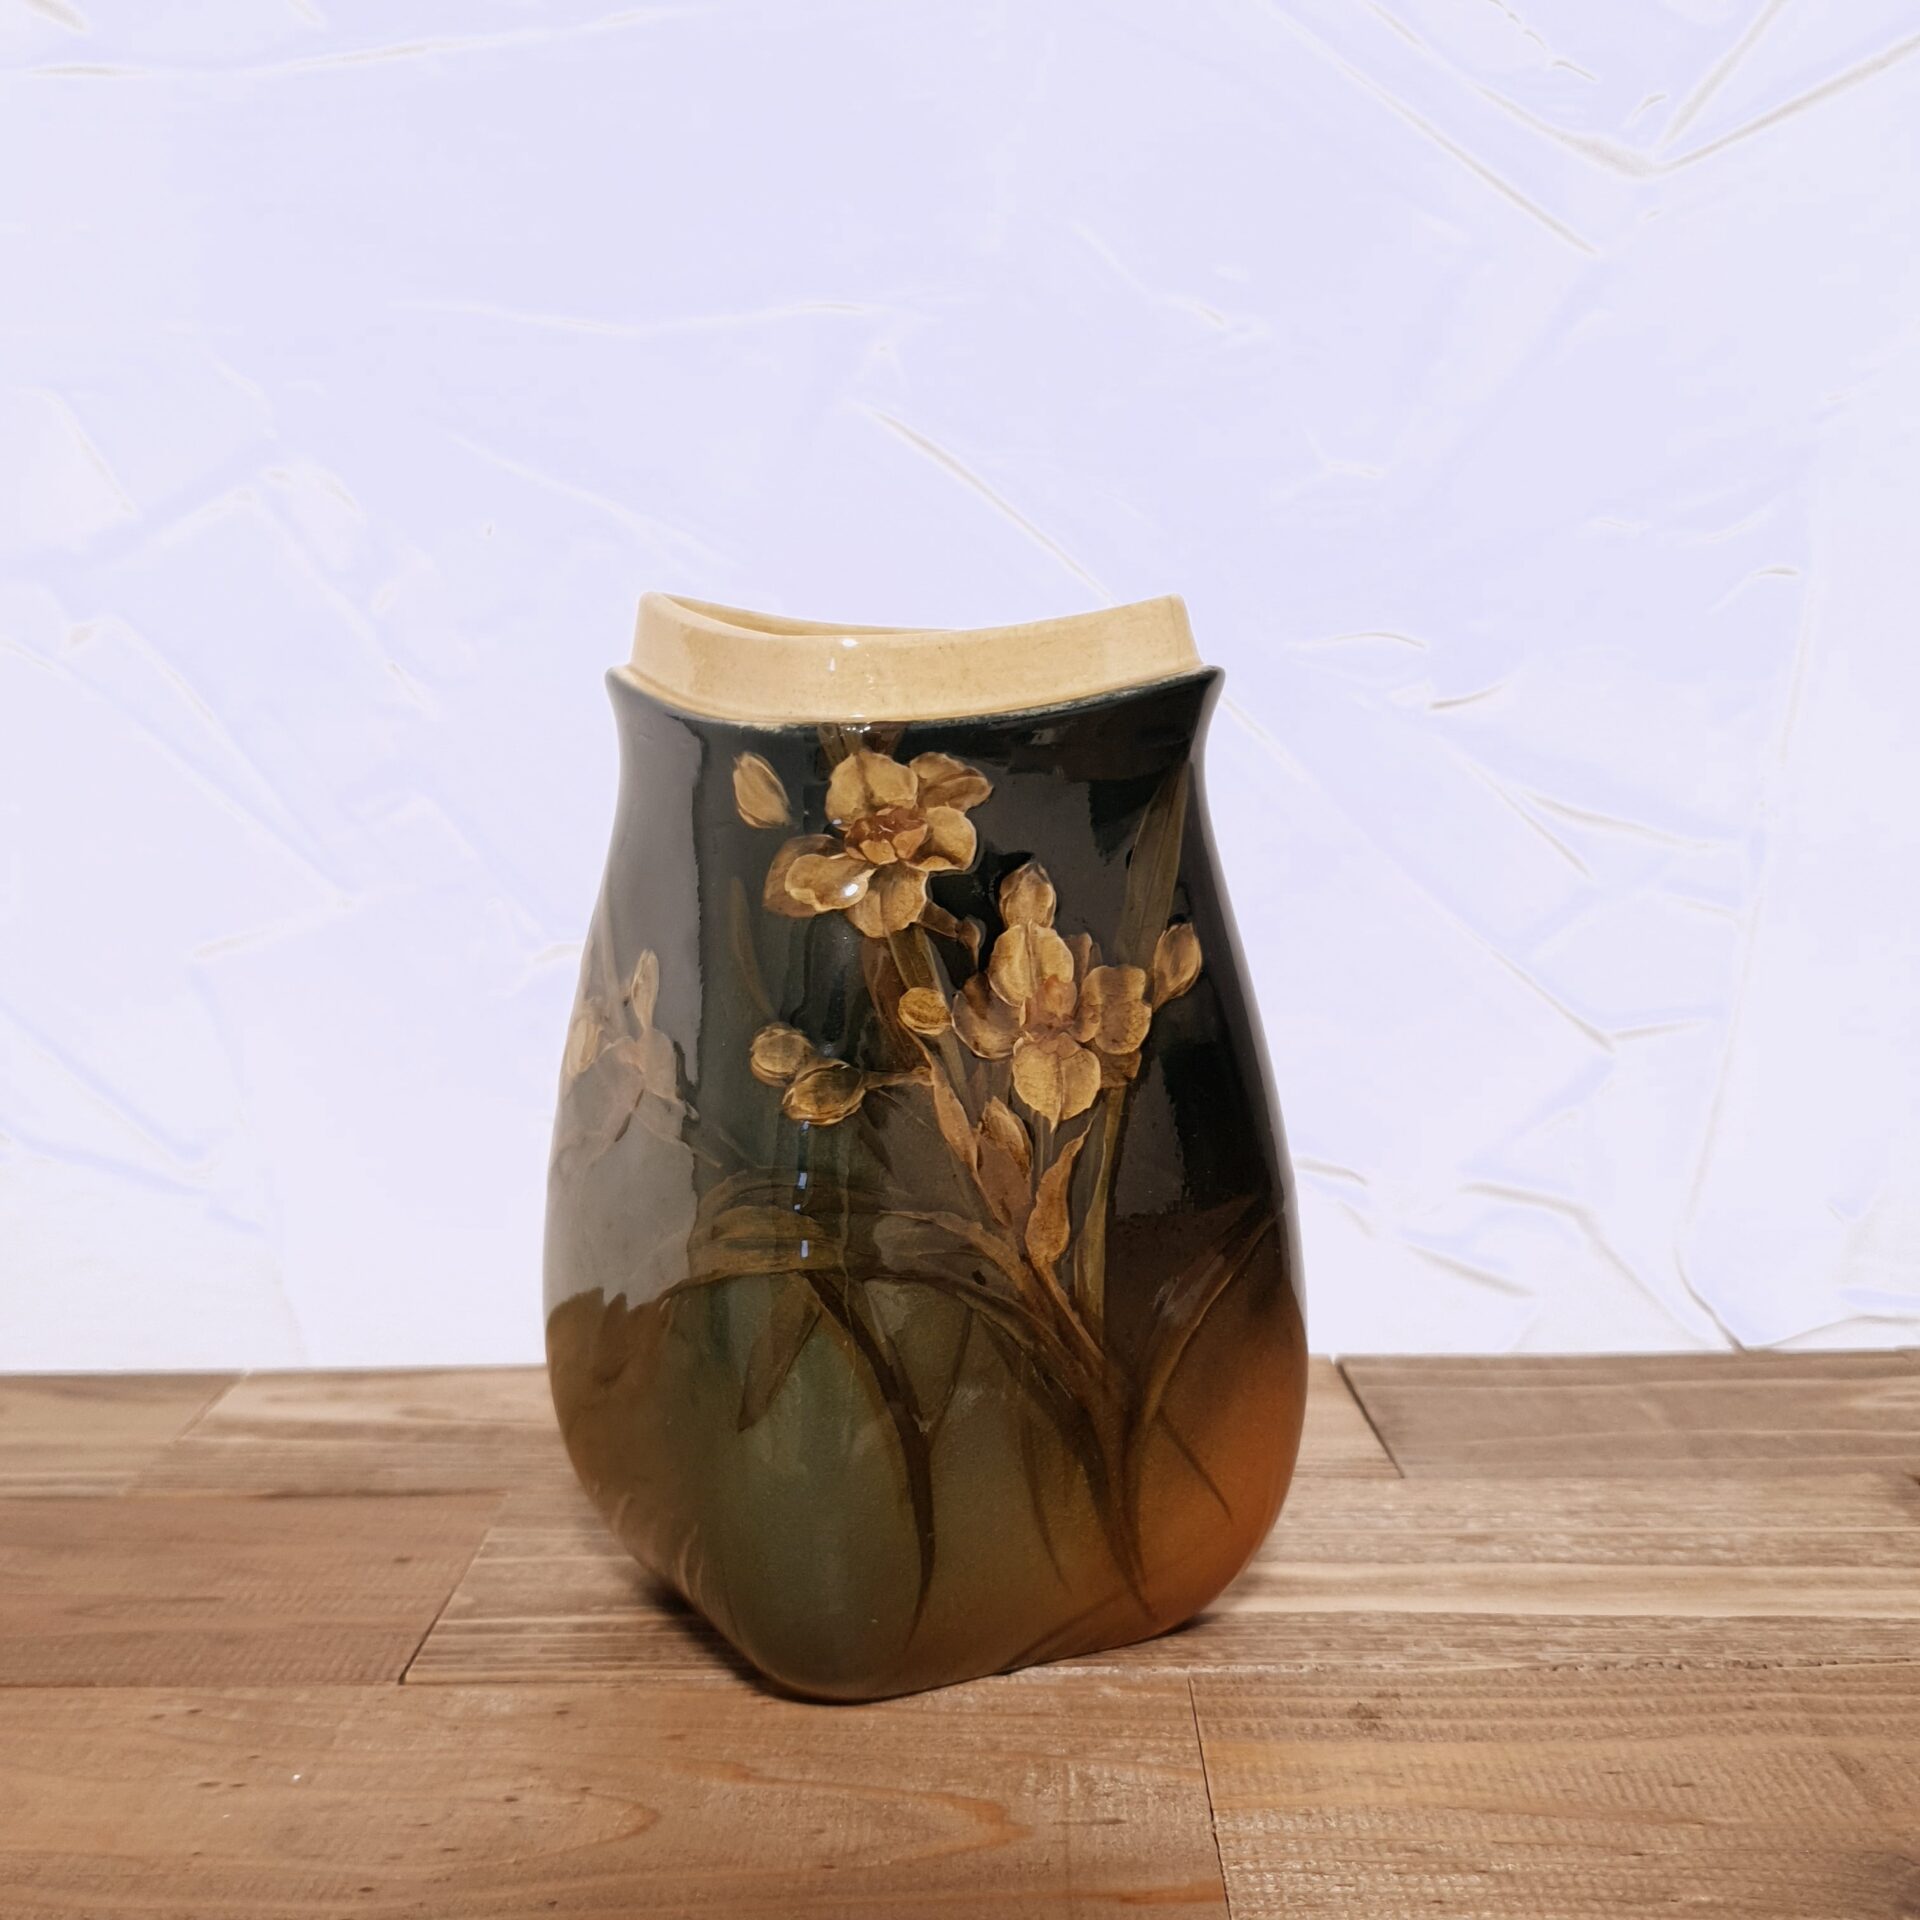 ルックウッド(Rookwood)のアンティーク花瓶